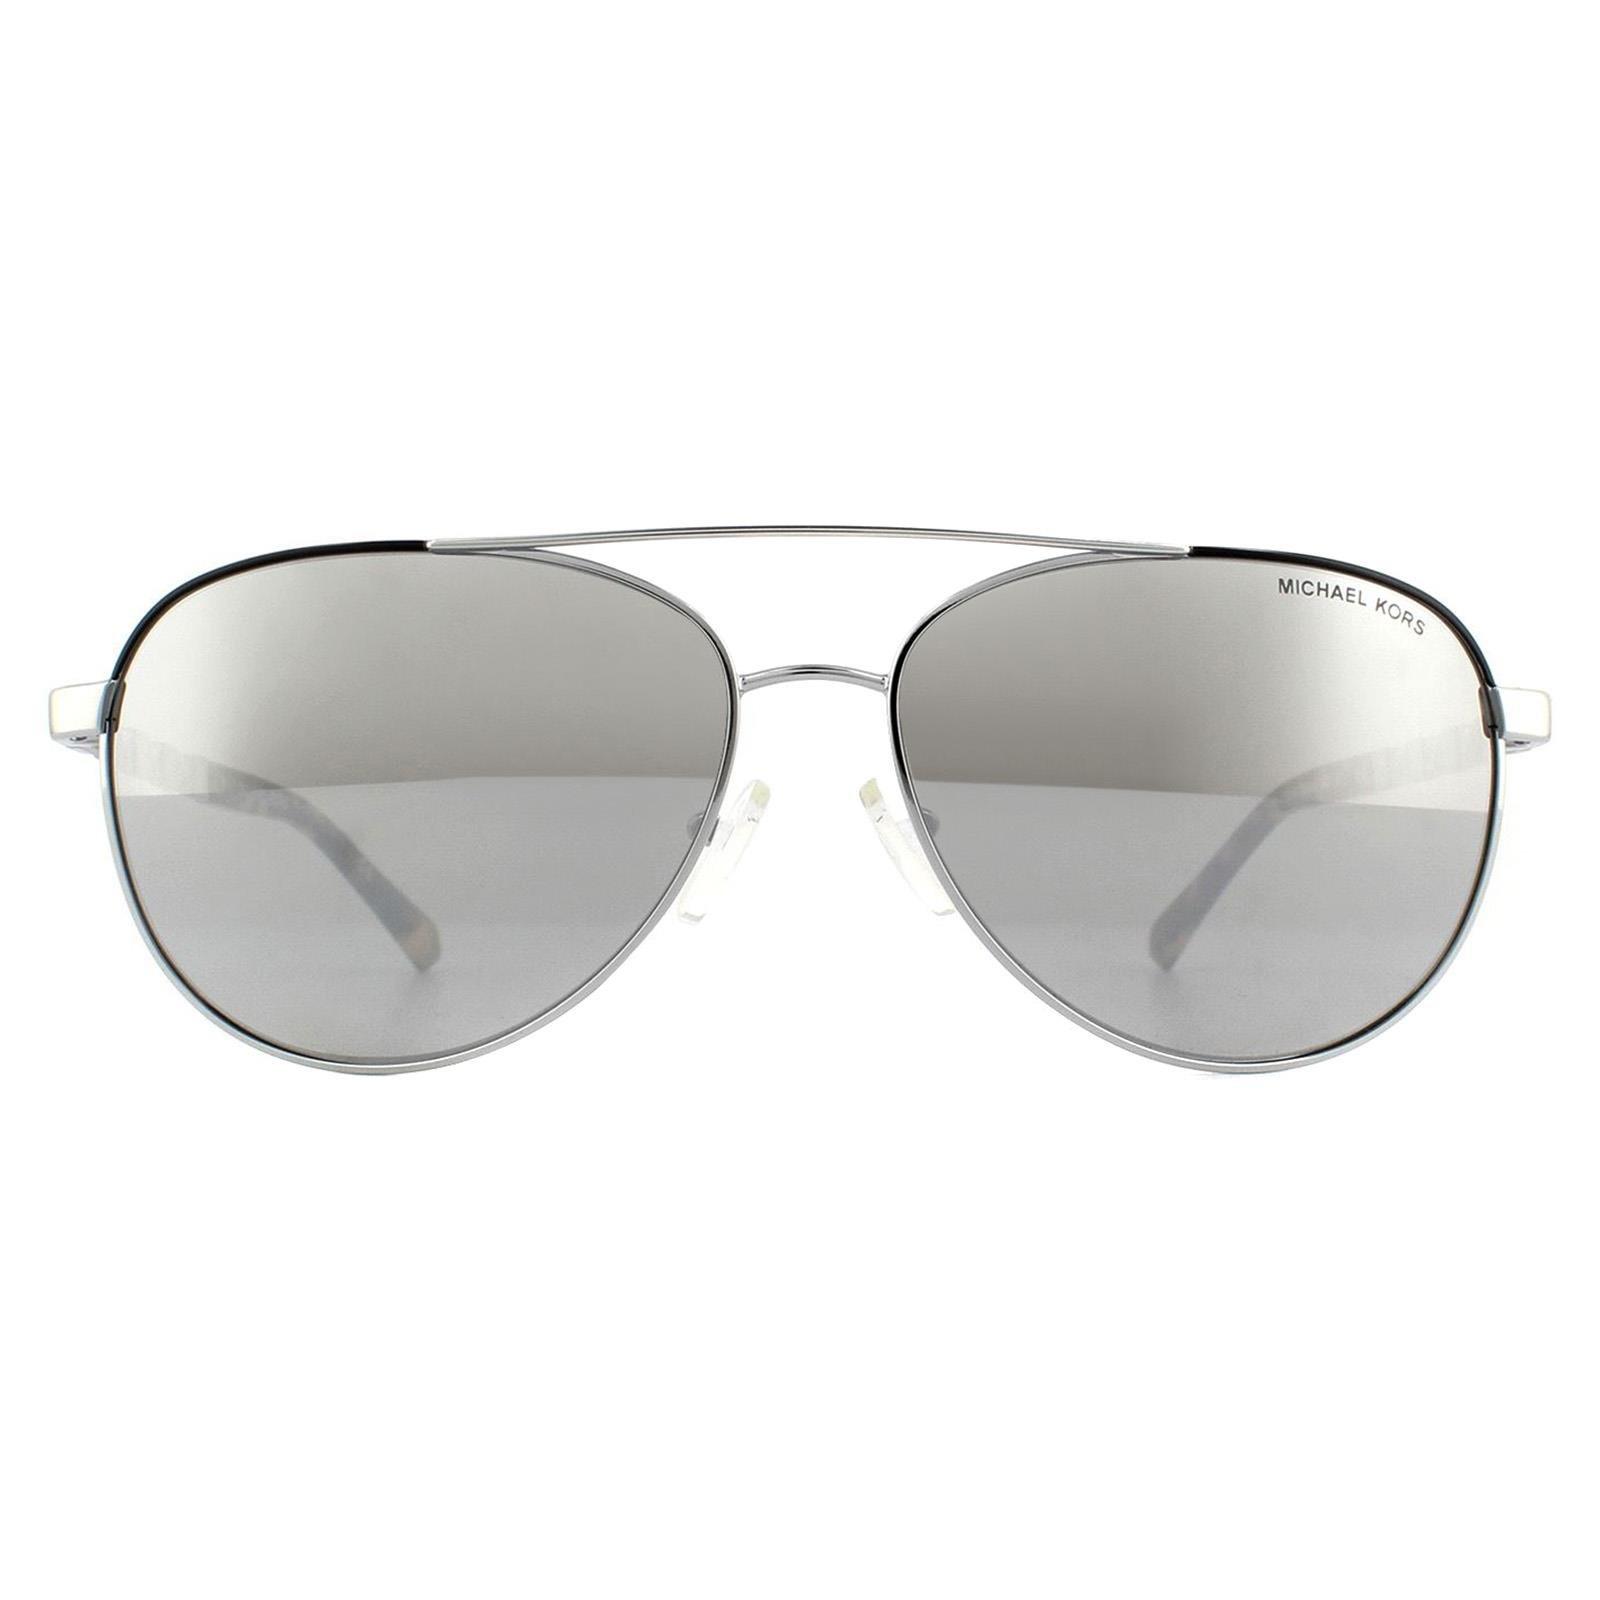 Серебристые зеркальные солнцезащитные очки-авиаторы Michael Kors, серебро qiqipp креативный магнитный магнит на холодильник san juan столица пуэрто рико сша